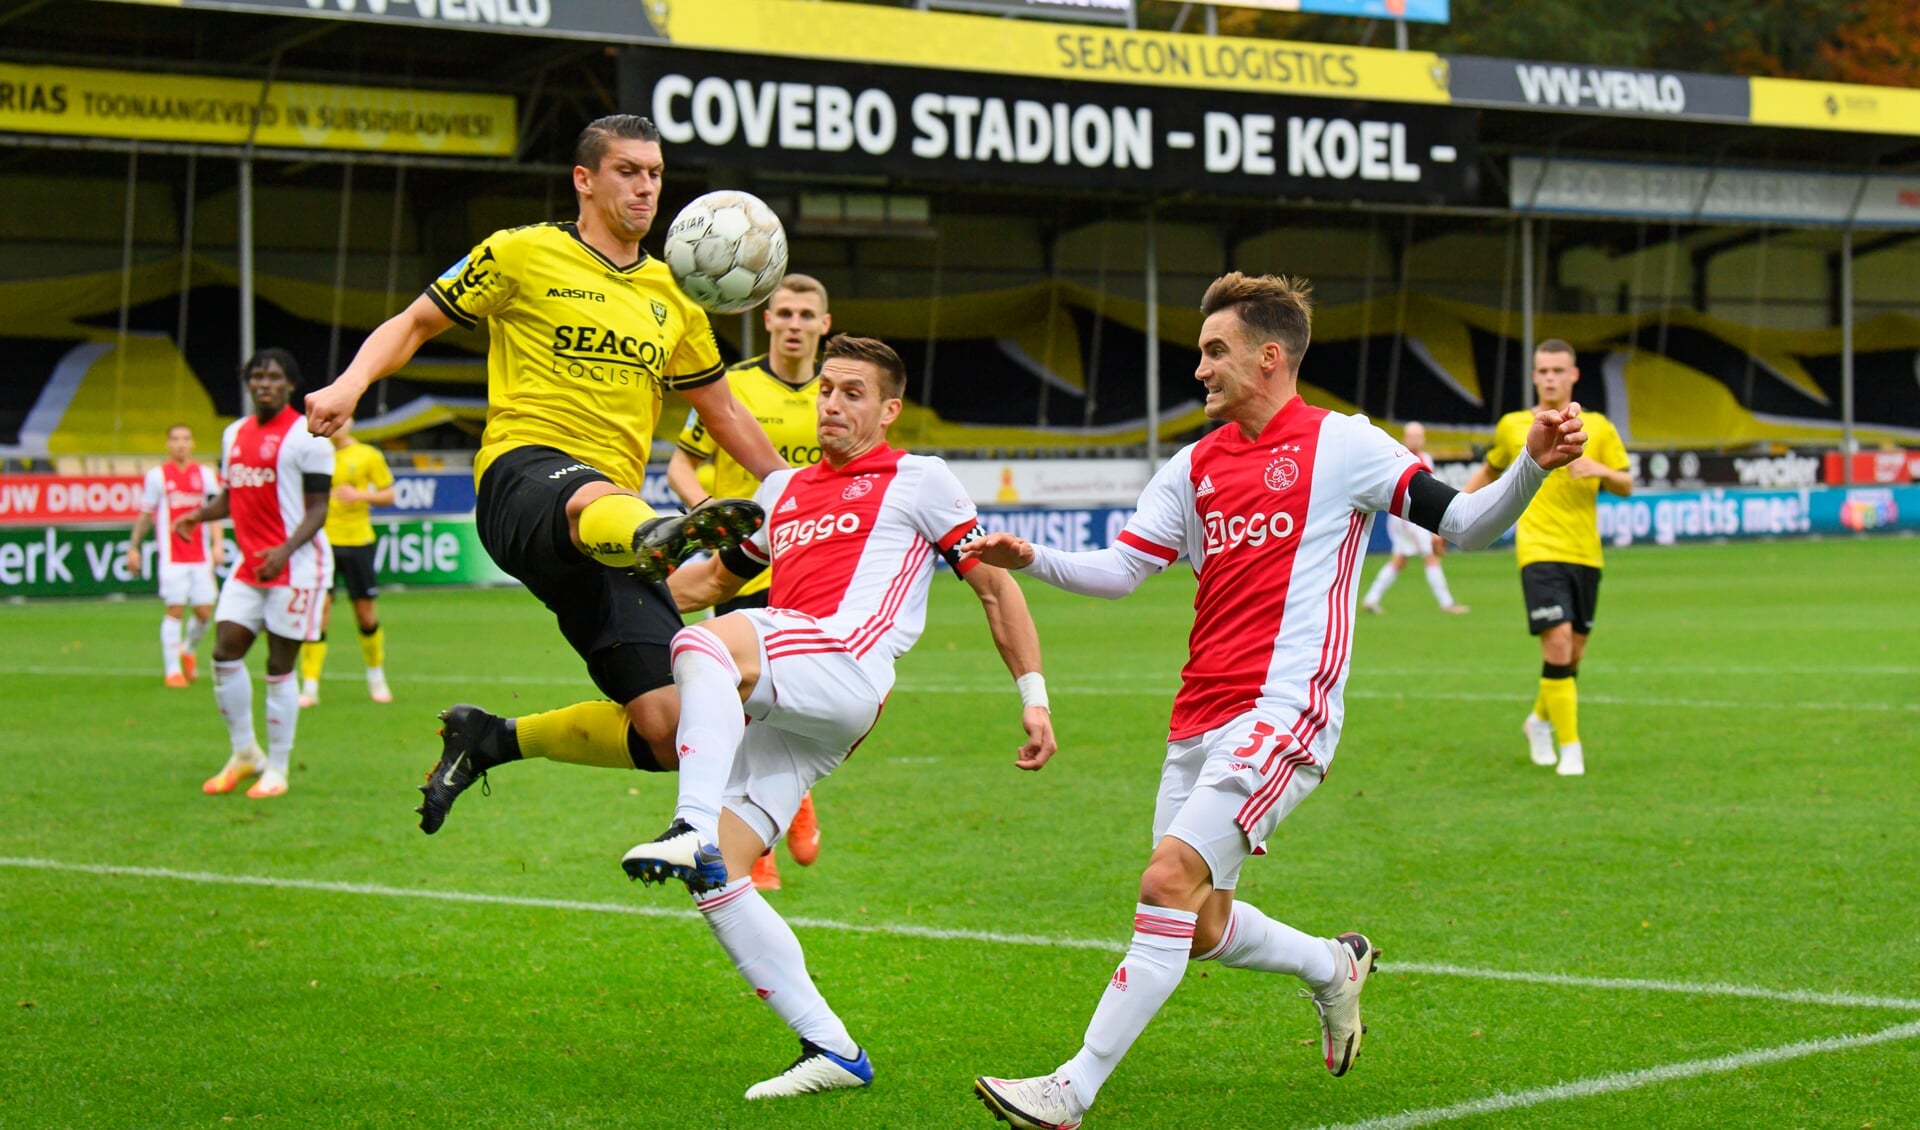 Fragment uit de wedstrijd tussen VVV-Venlo en Ajax in het Covebo Stadion - De Koel.